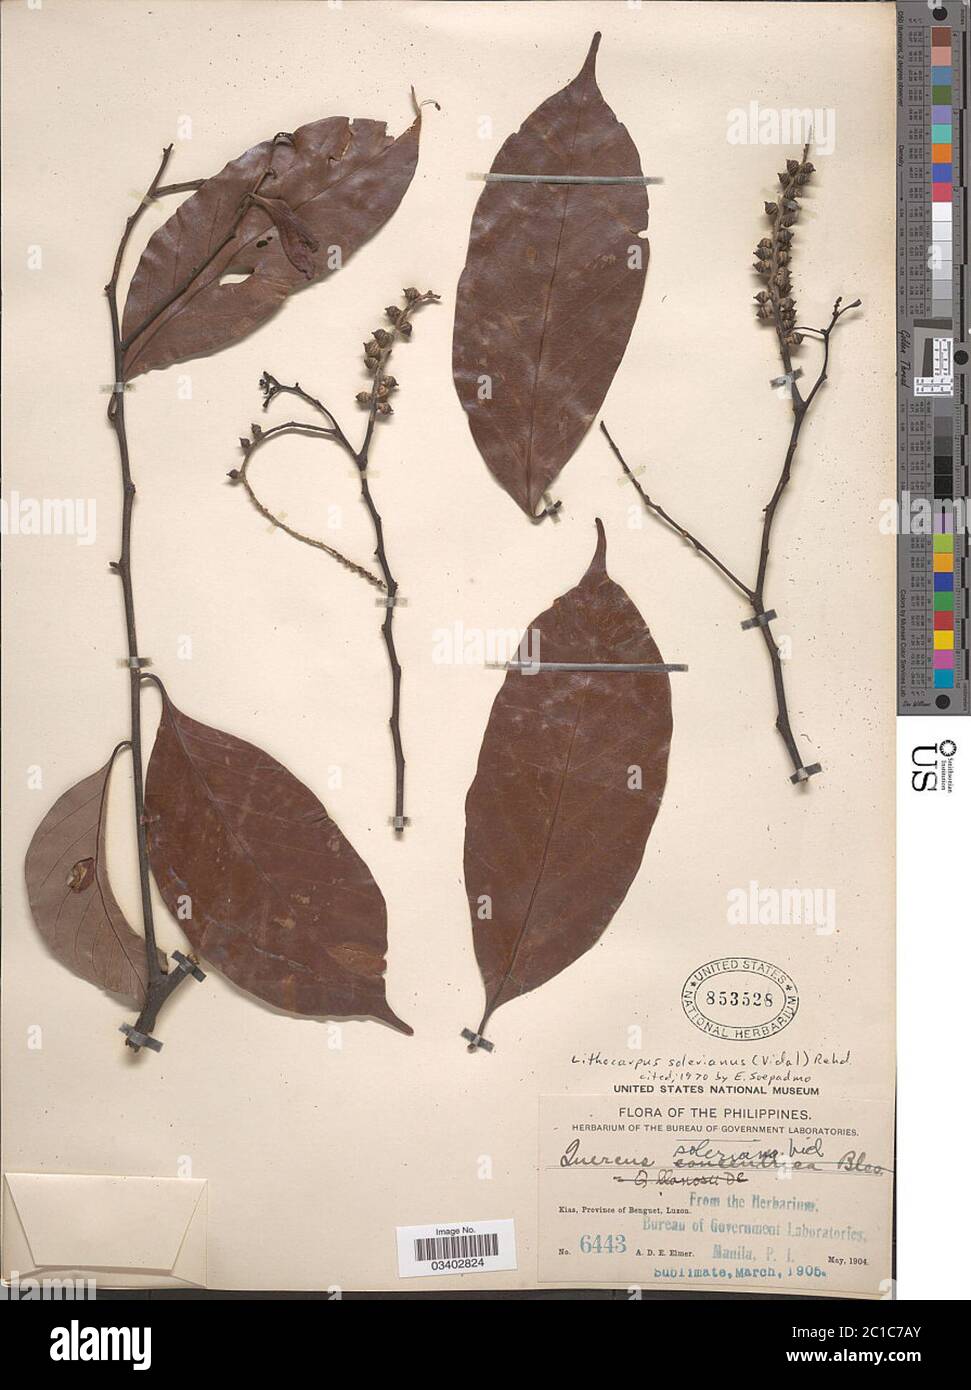 Lithocarpus solerianus Vidal Rehder Lithocarpus solerianus Vidal Rehder. Stock Photo